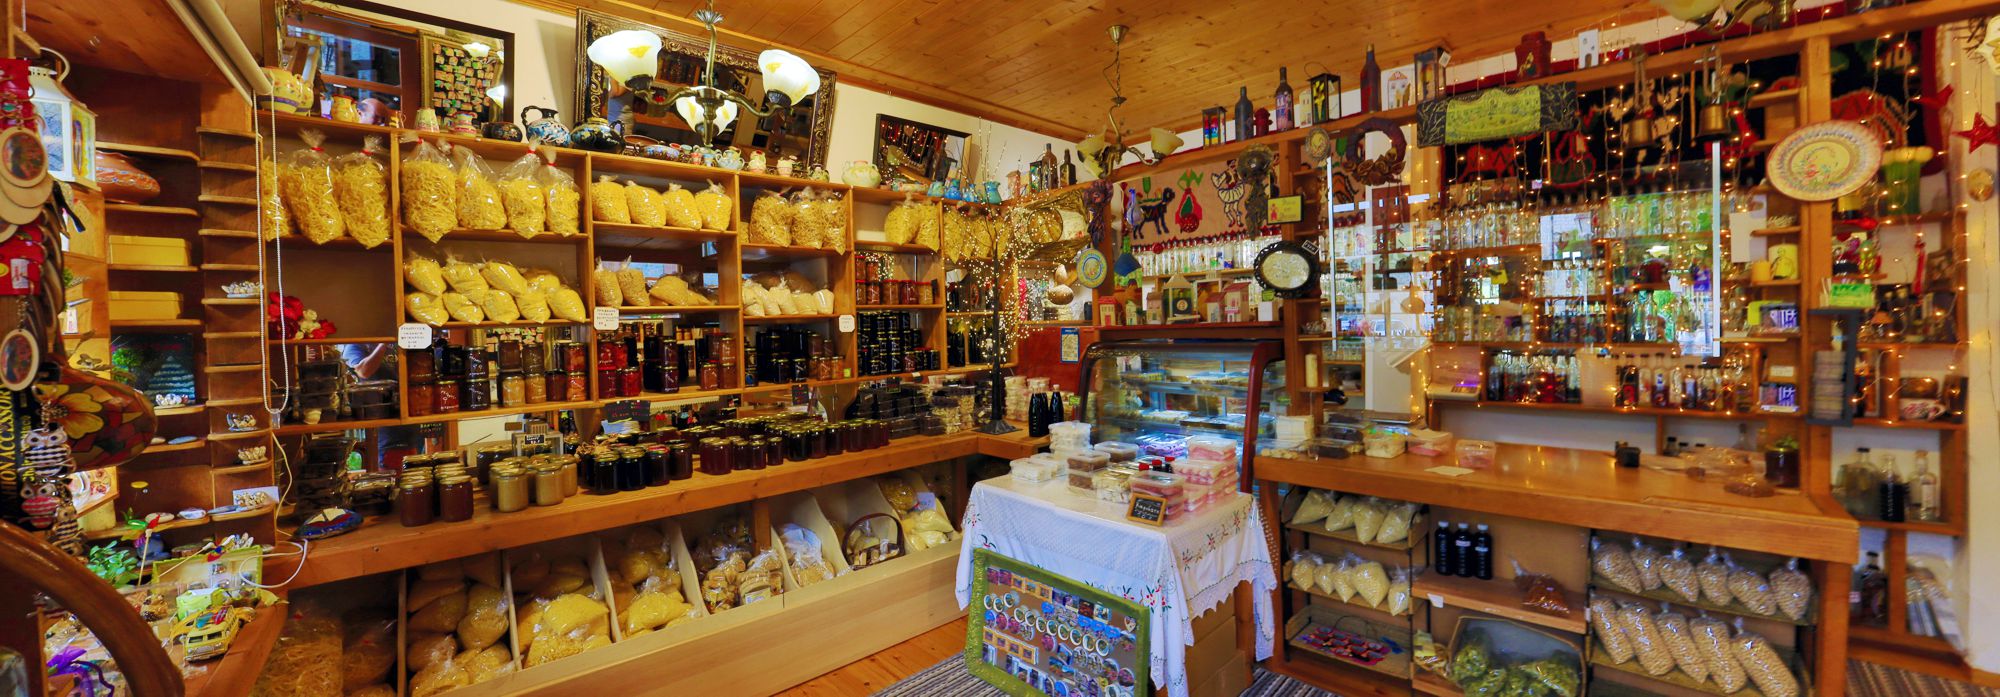 Στεμνίτσα: Τοπικό κατάστημα με παραδοσιακά προϊόντα